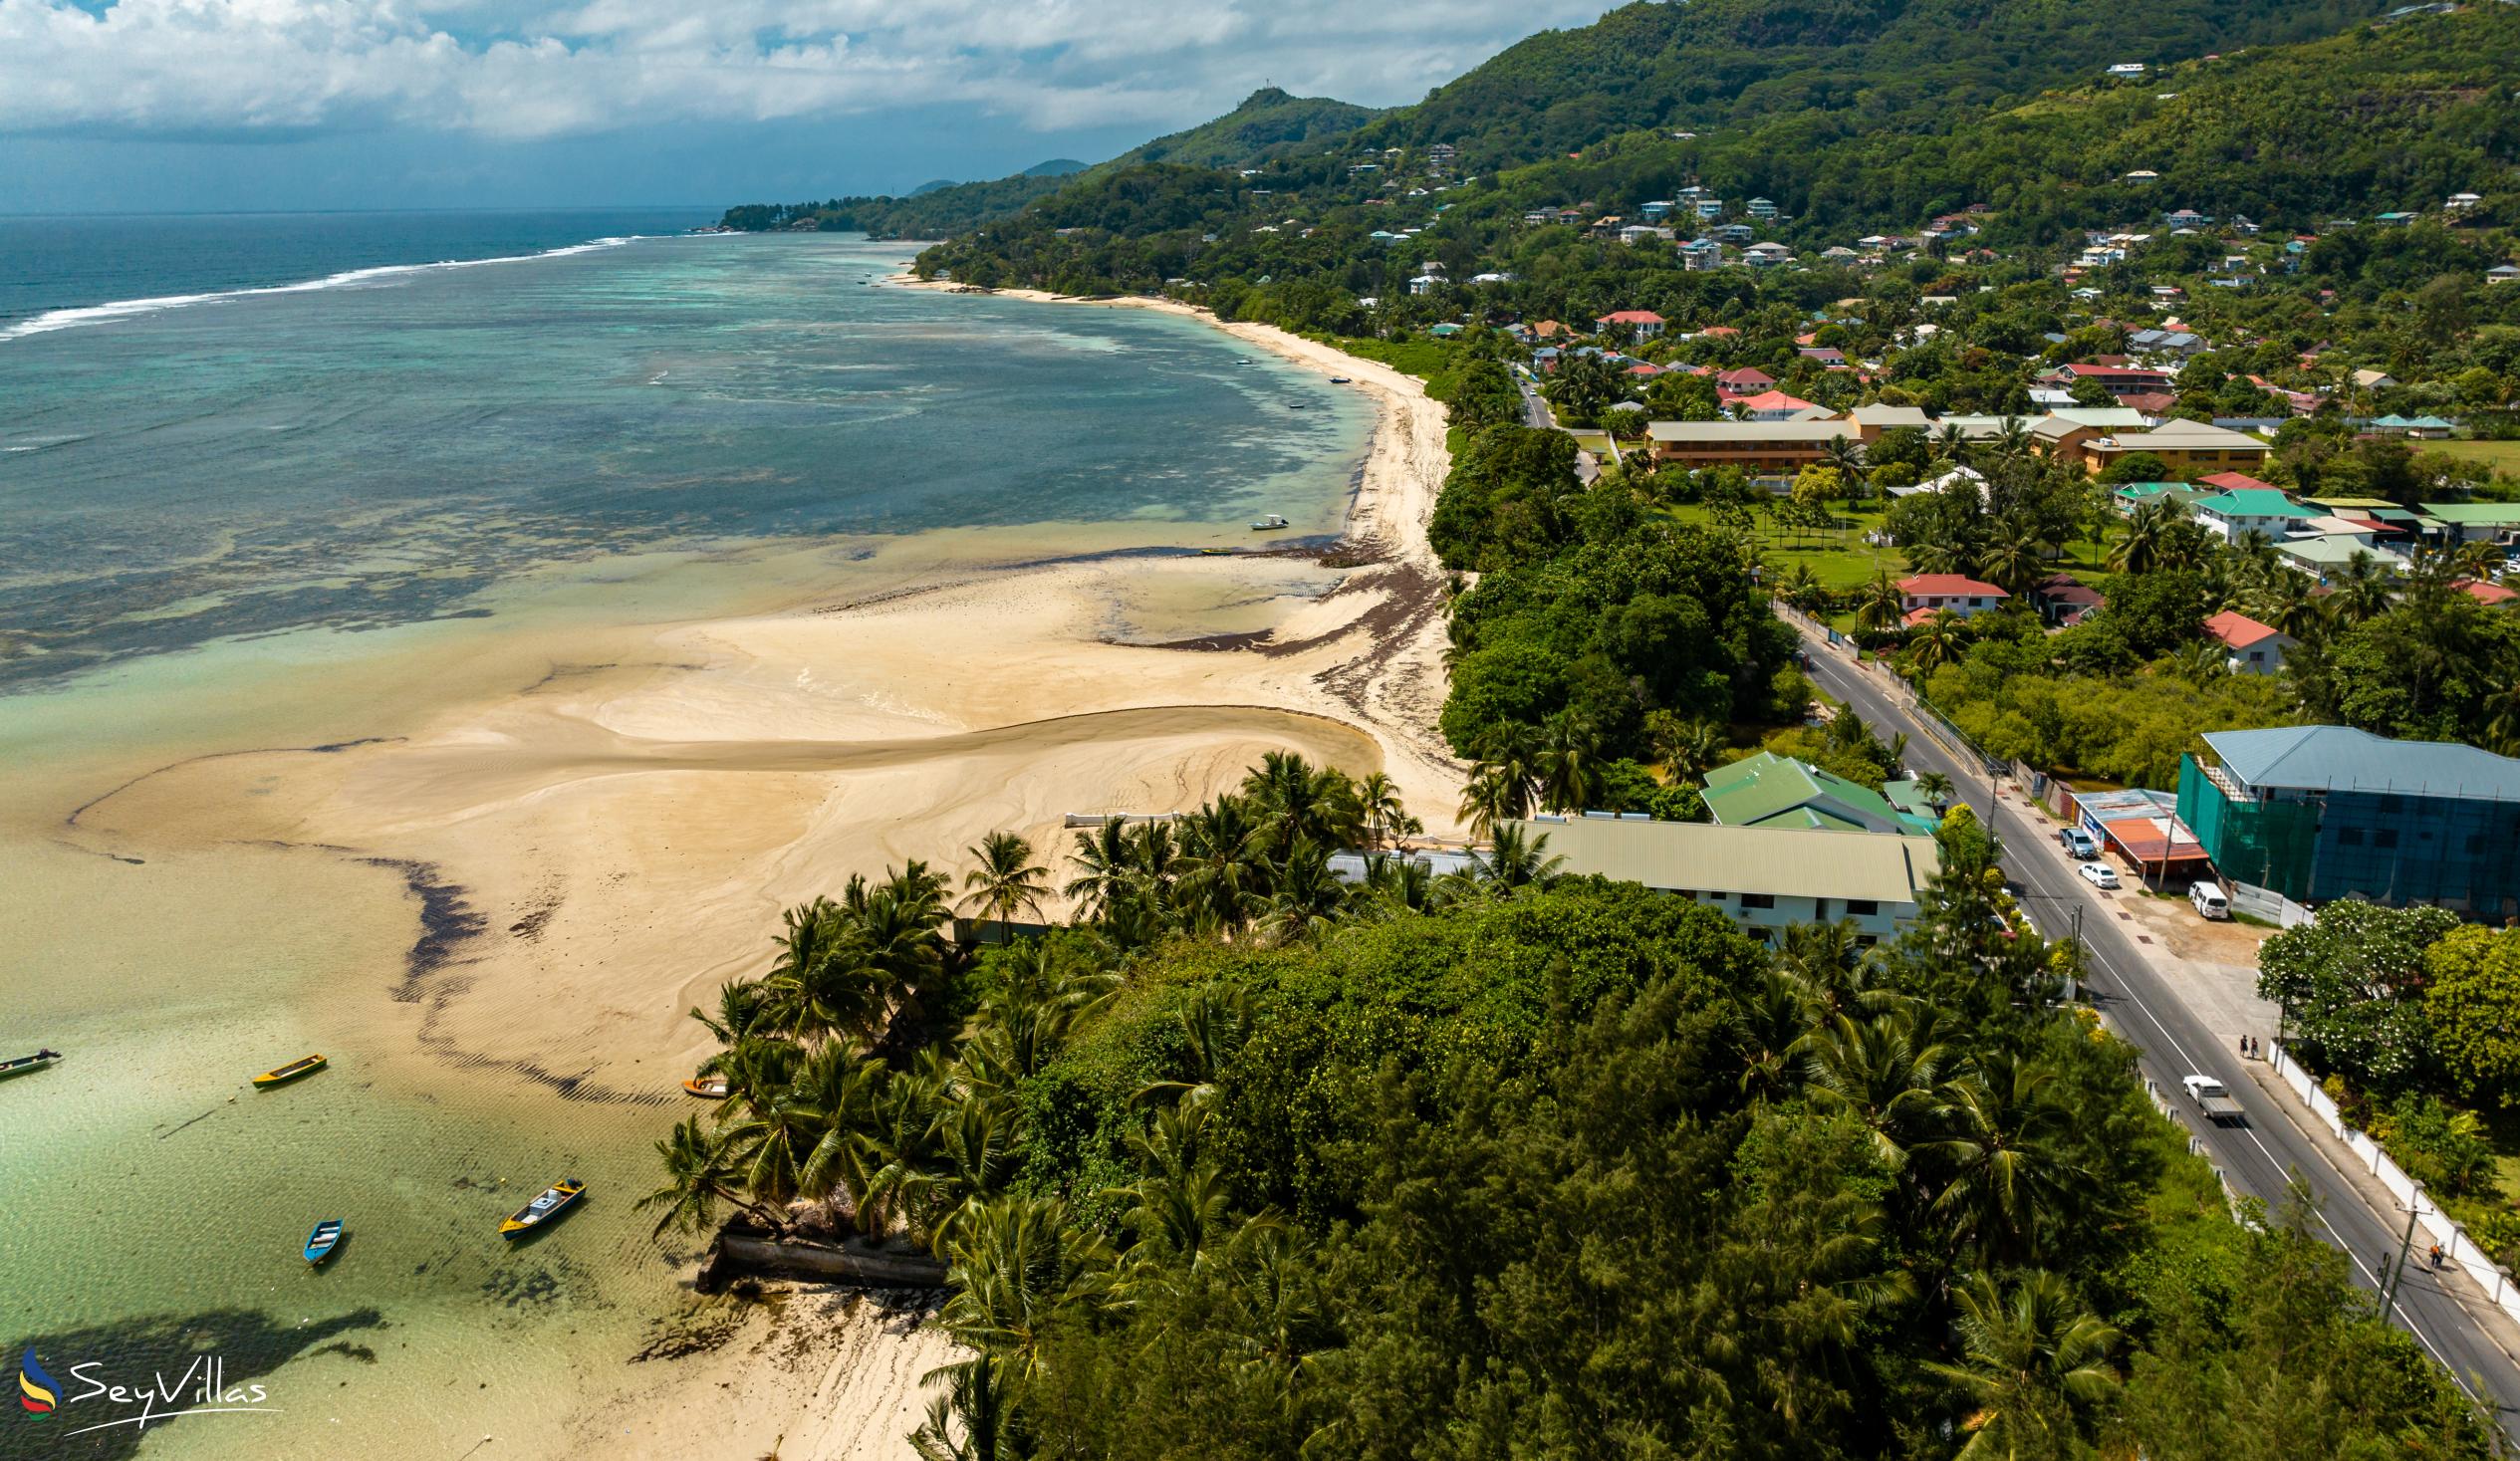 Photo 84: Hotel La Roussette - Location - Mahé (Seychelles)